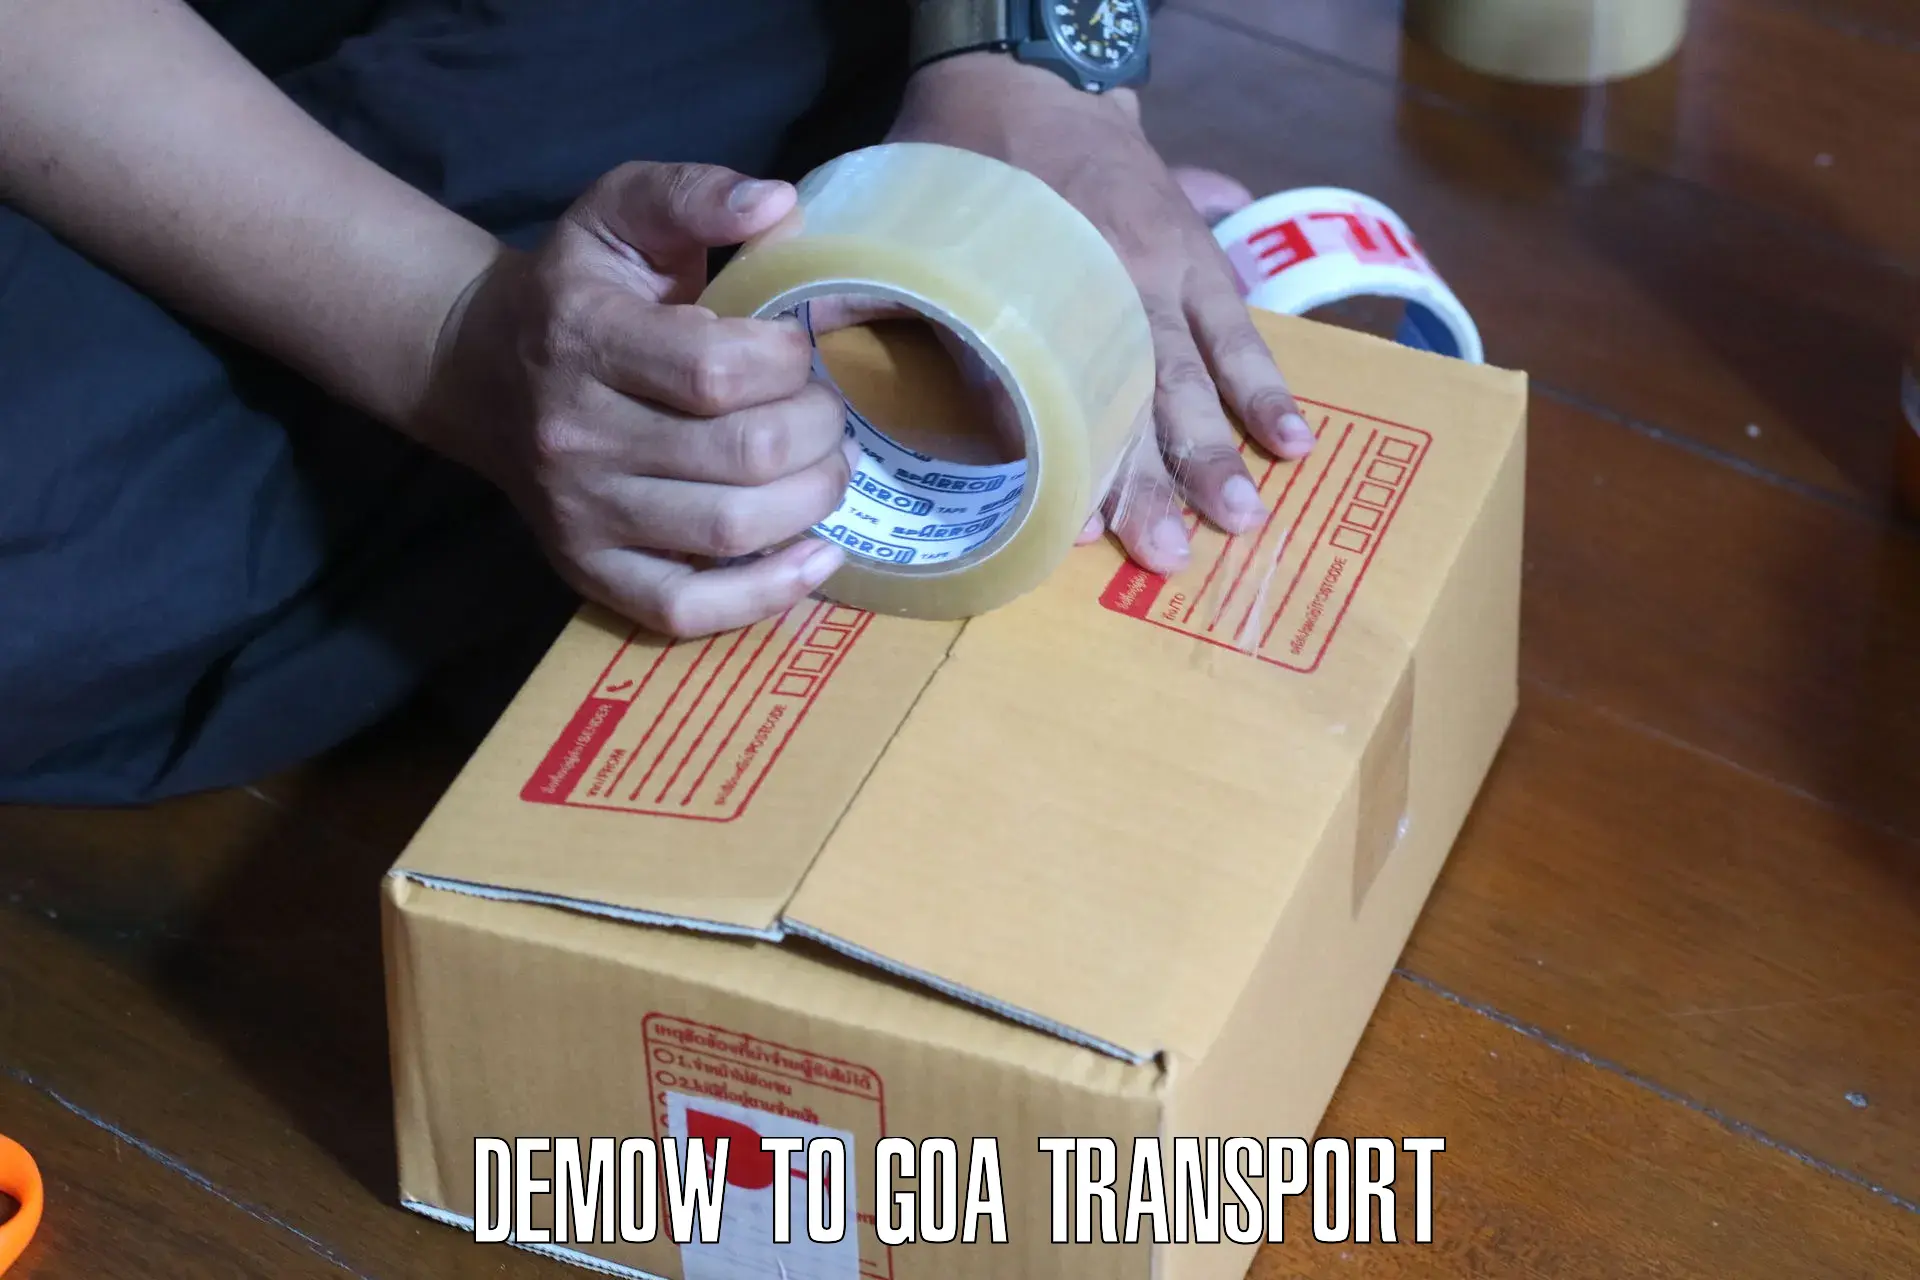 Daily transport service Demow to Vasco da Gama